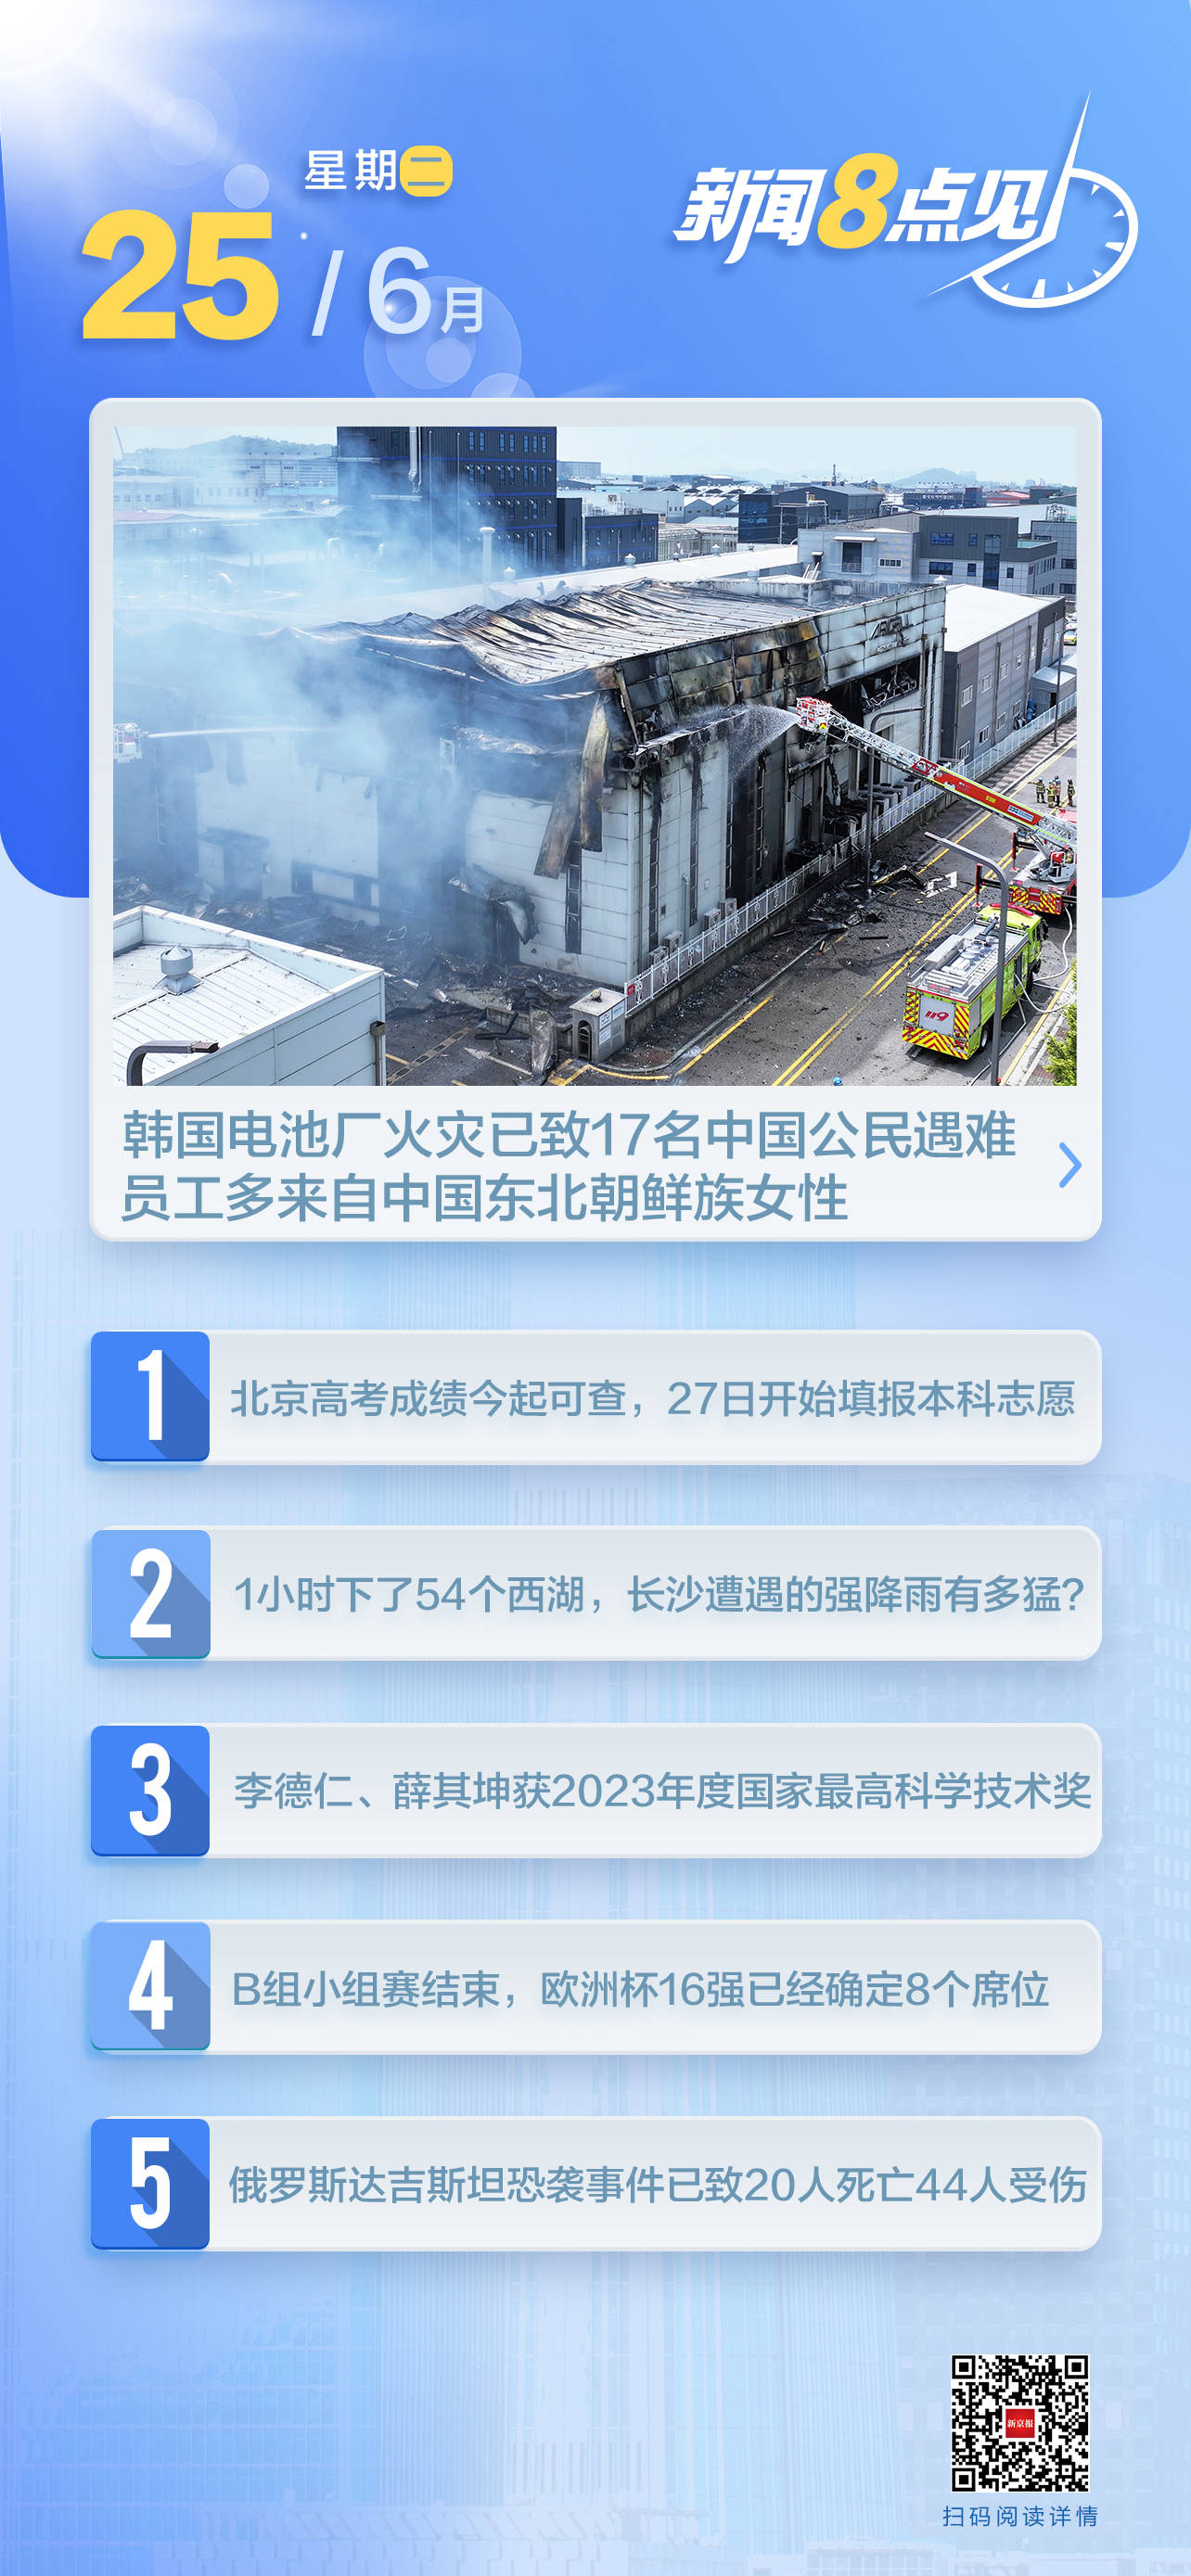 新闻8点见丨国家最高科学技术奖揭晓；韩电池厂火灾17名中国公民遇难